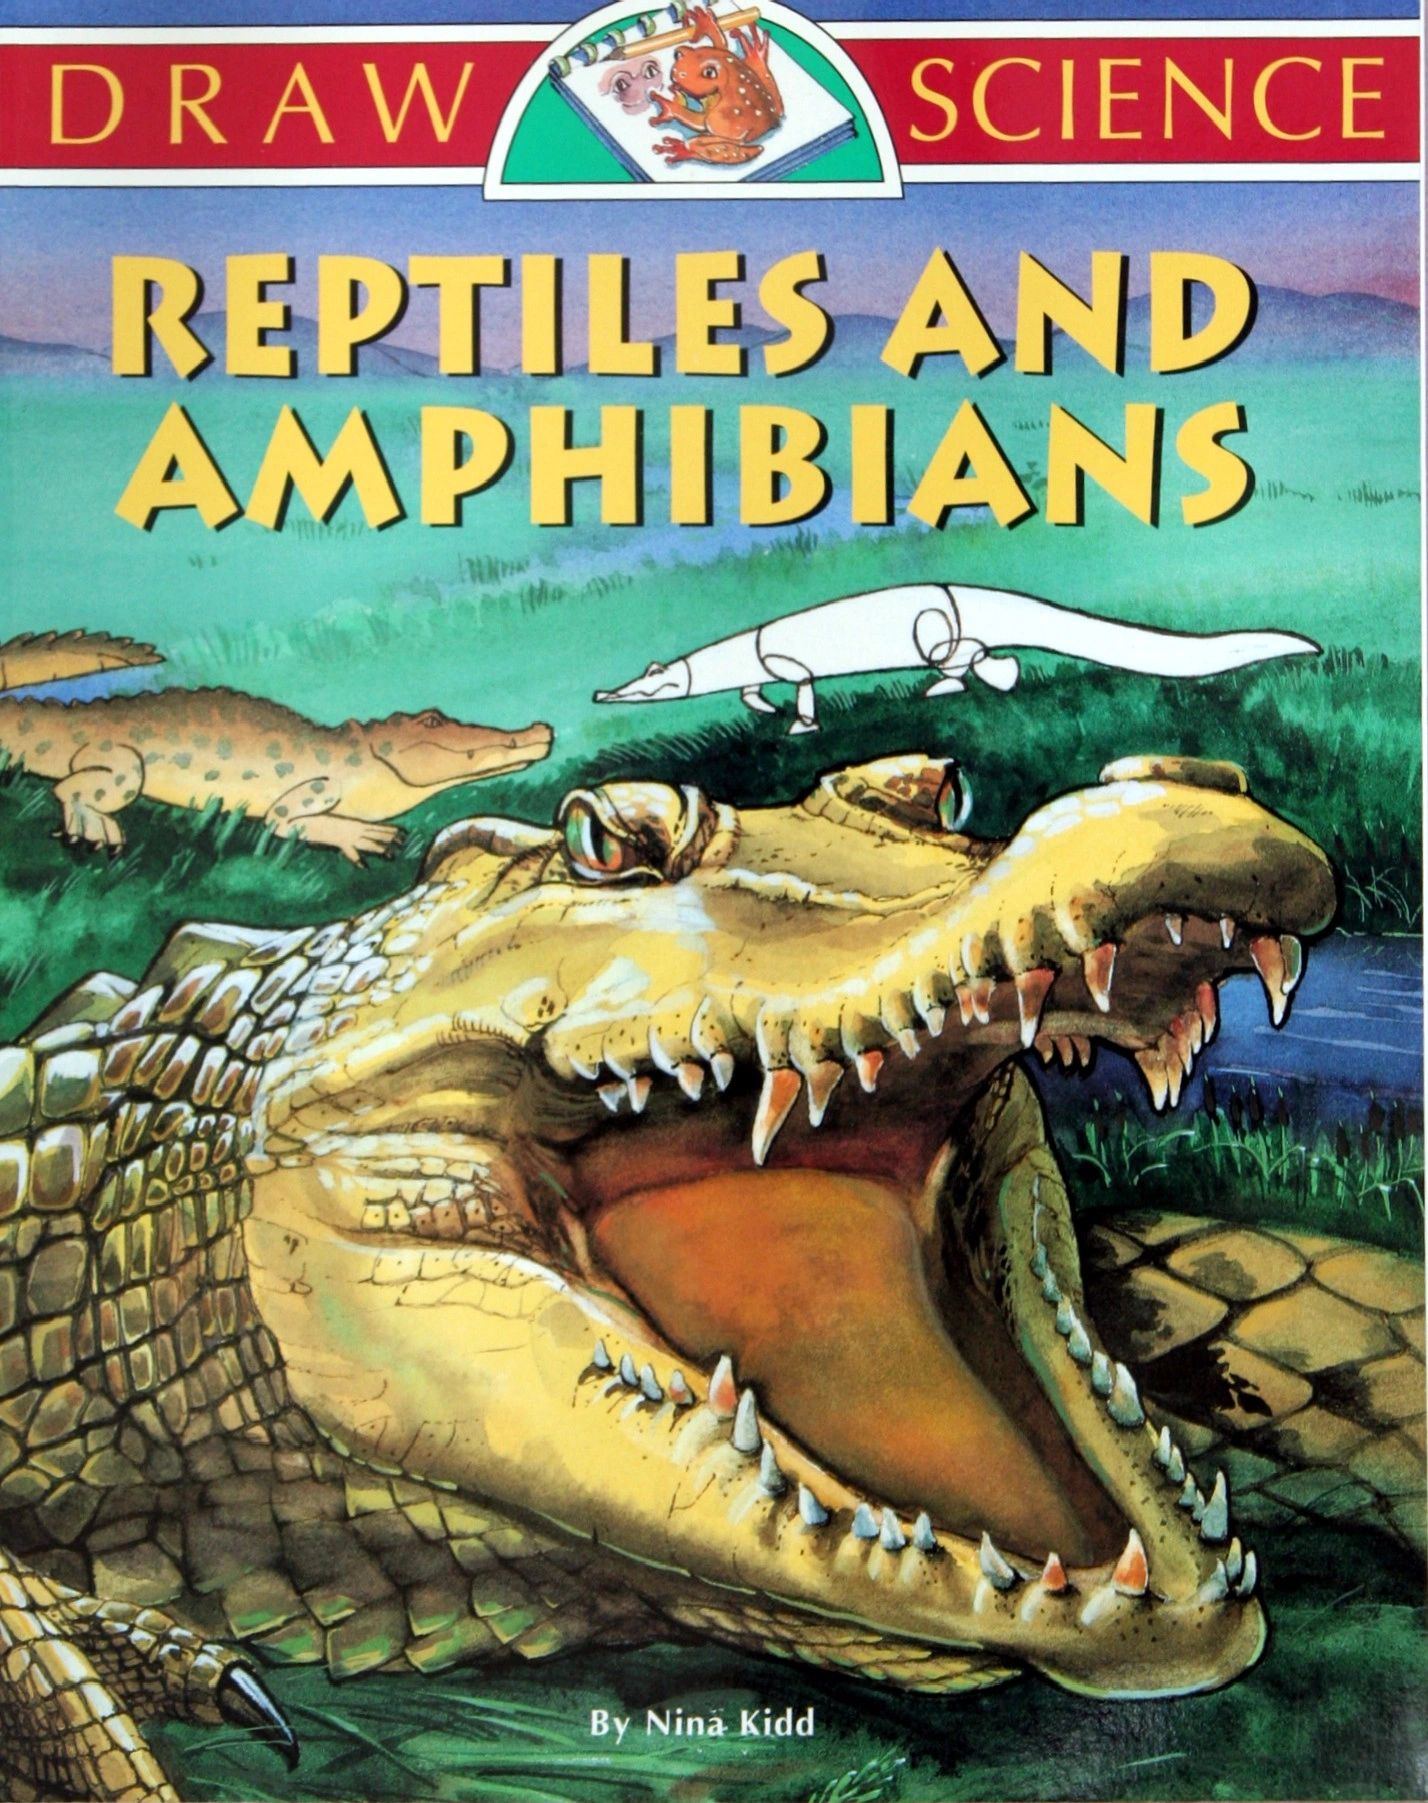 Reptiles_cover.jpg